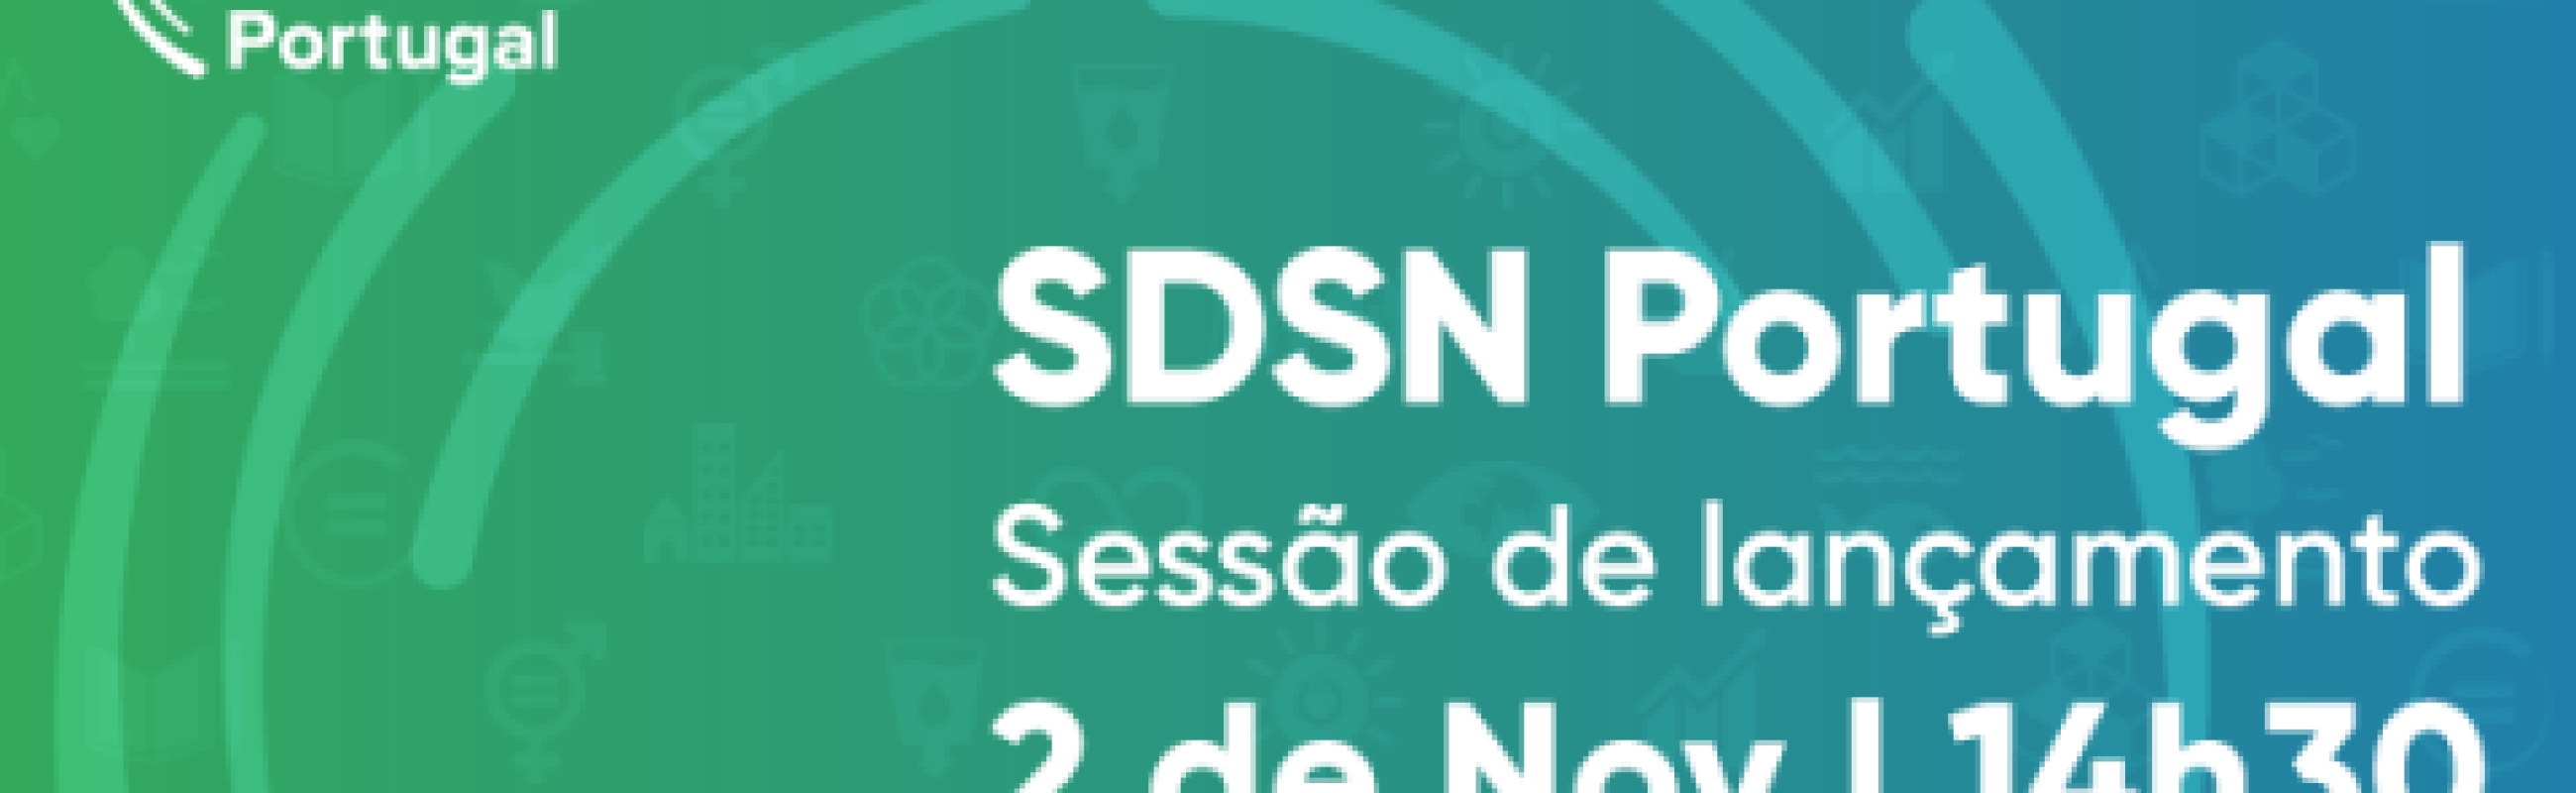 Lançamento da SDSN Portugal